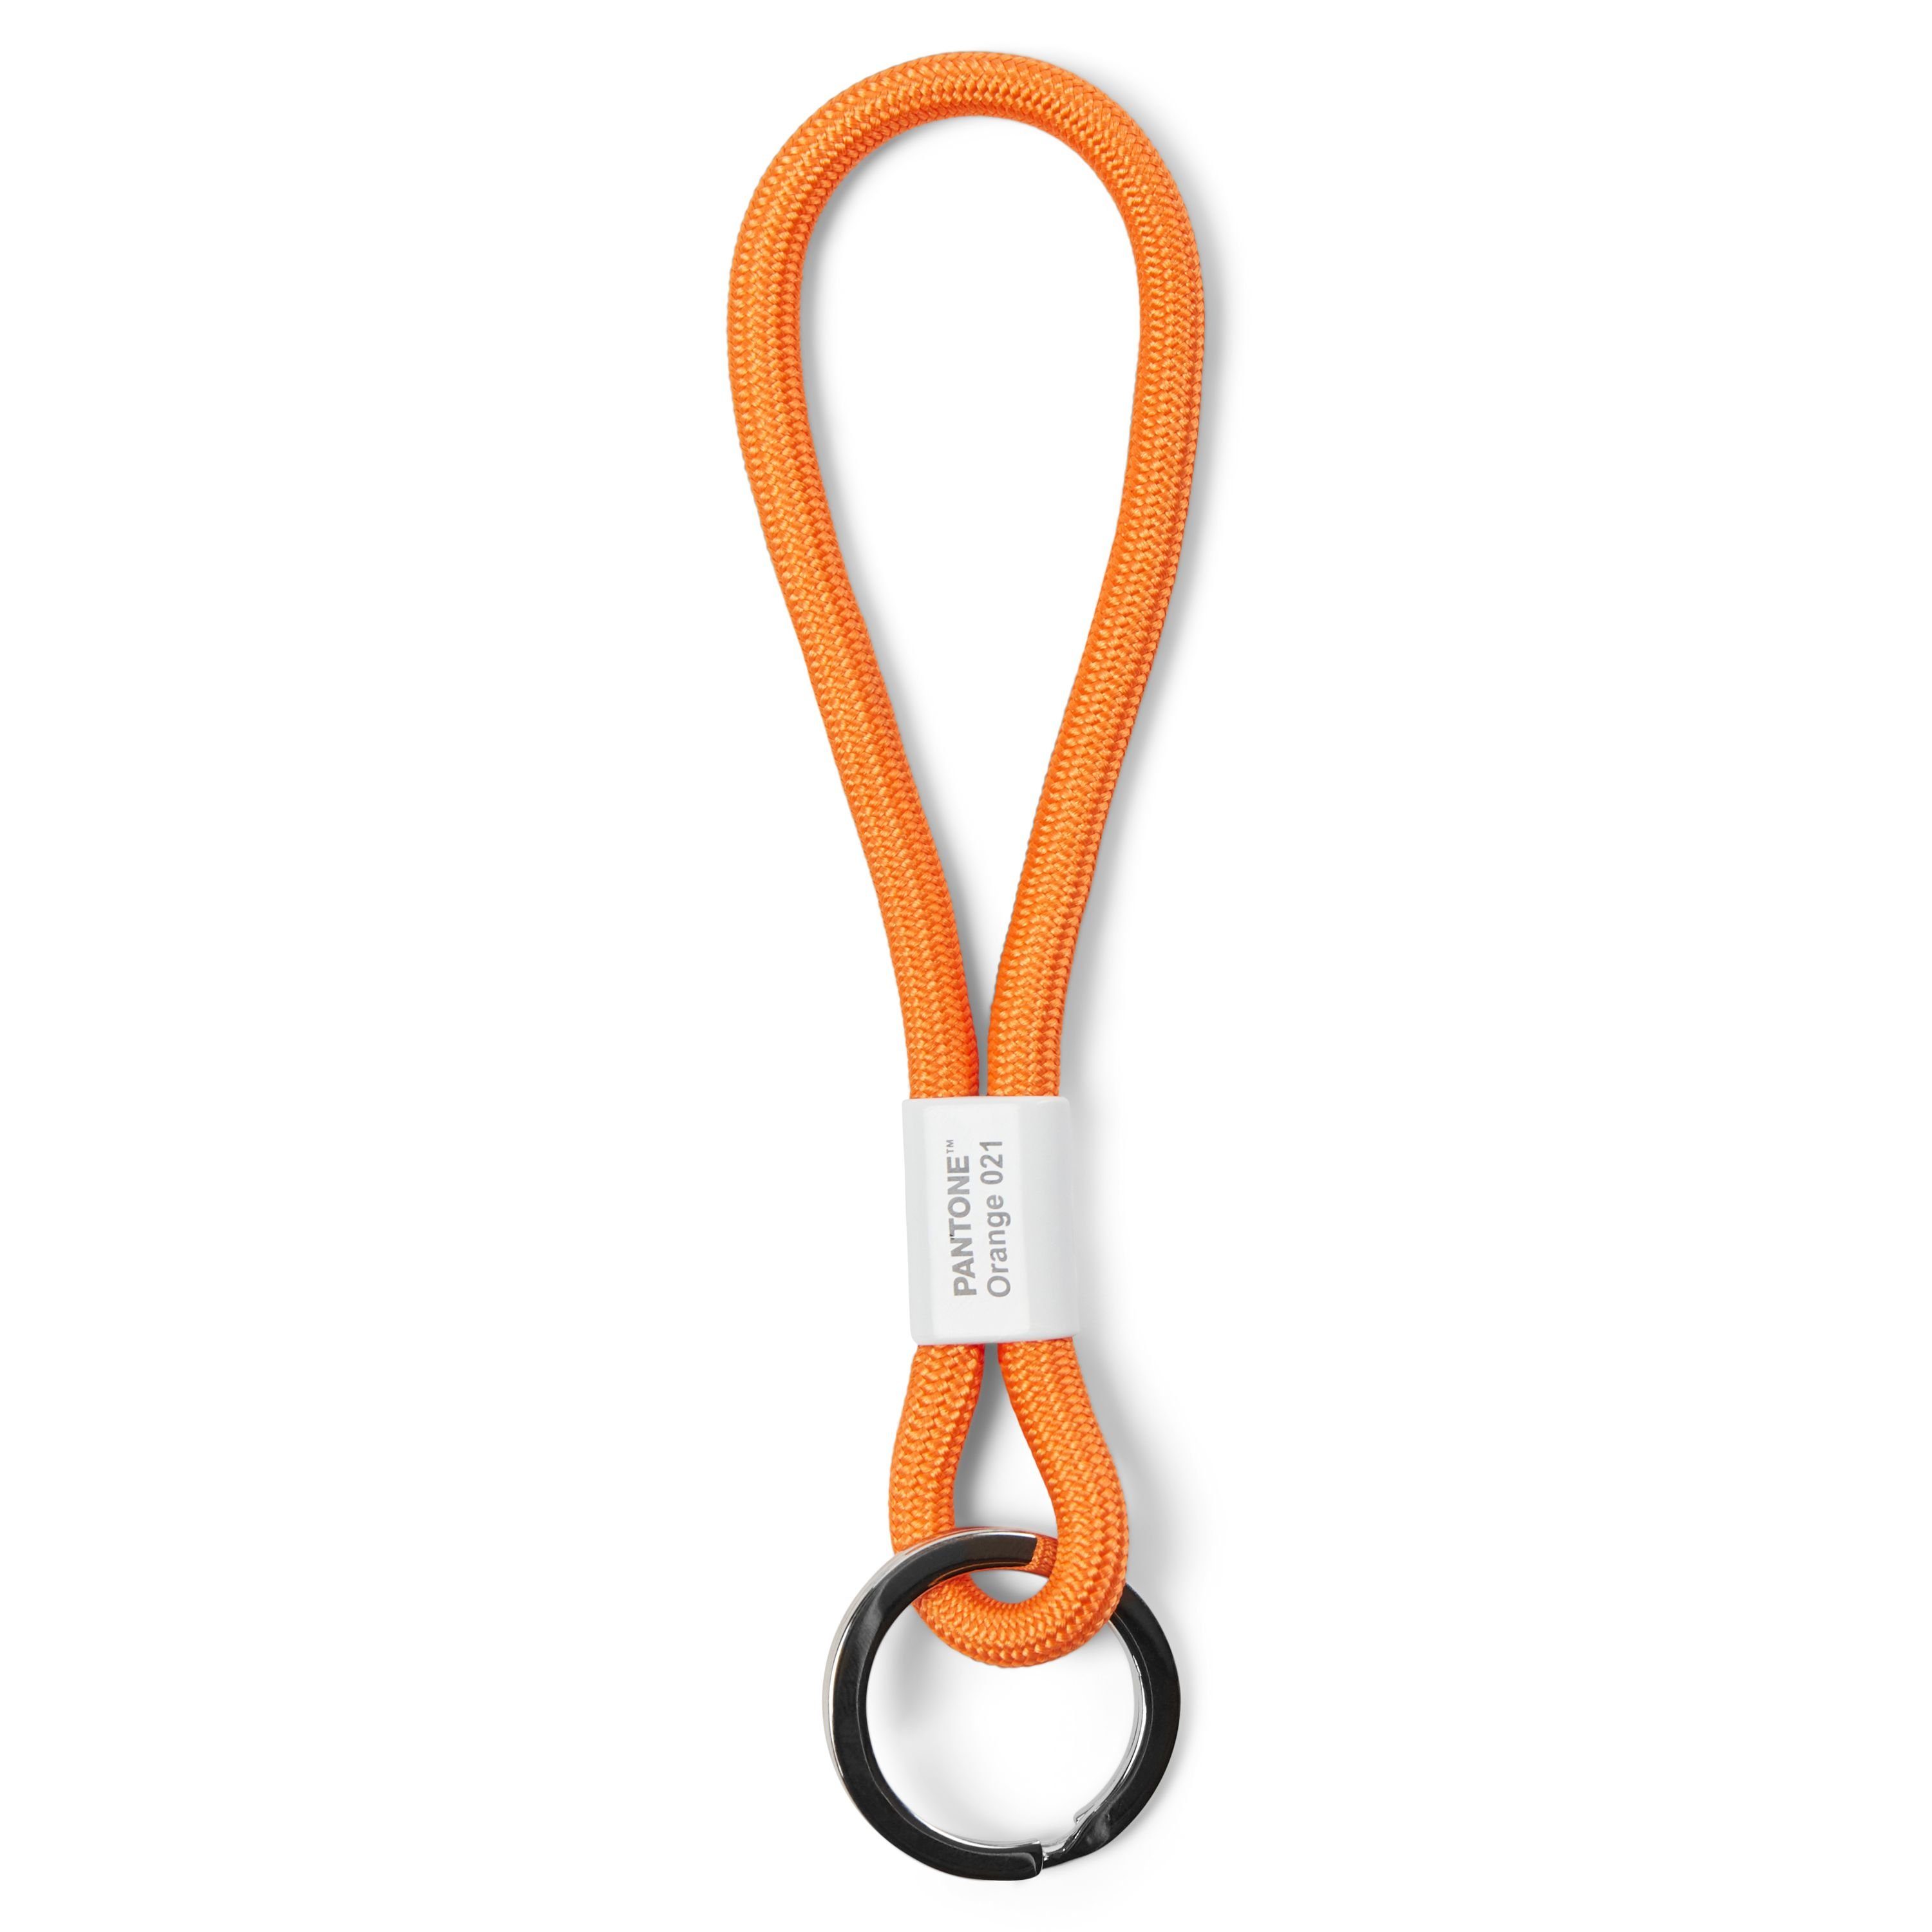 Key Chain, Orange kurz Design- Schlüsselband, Schlüsselanhänger, PANTONE 021